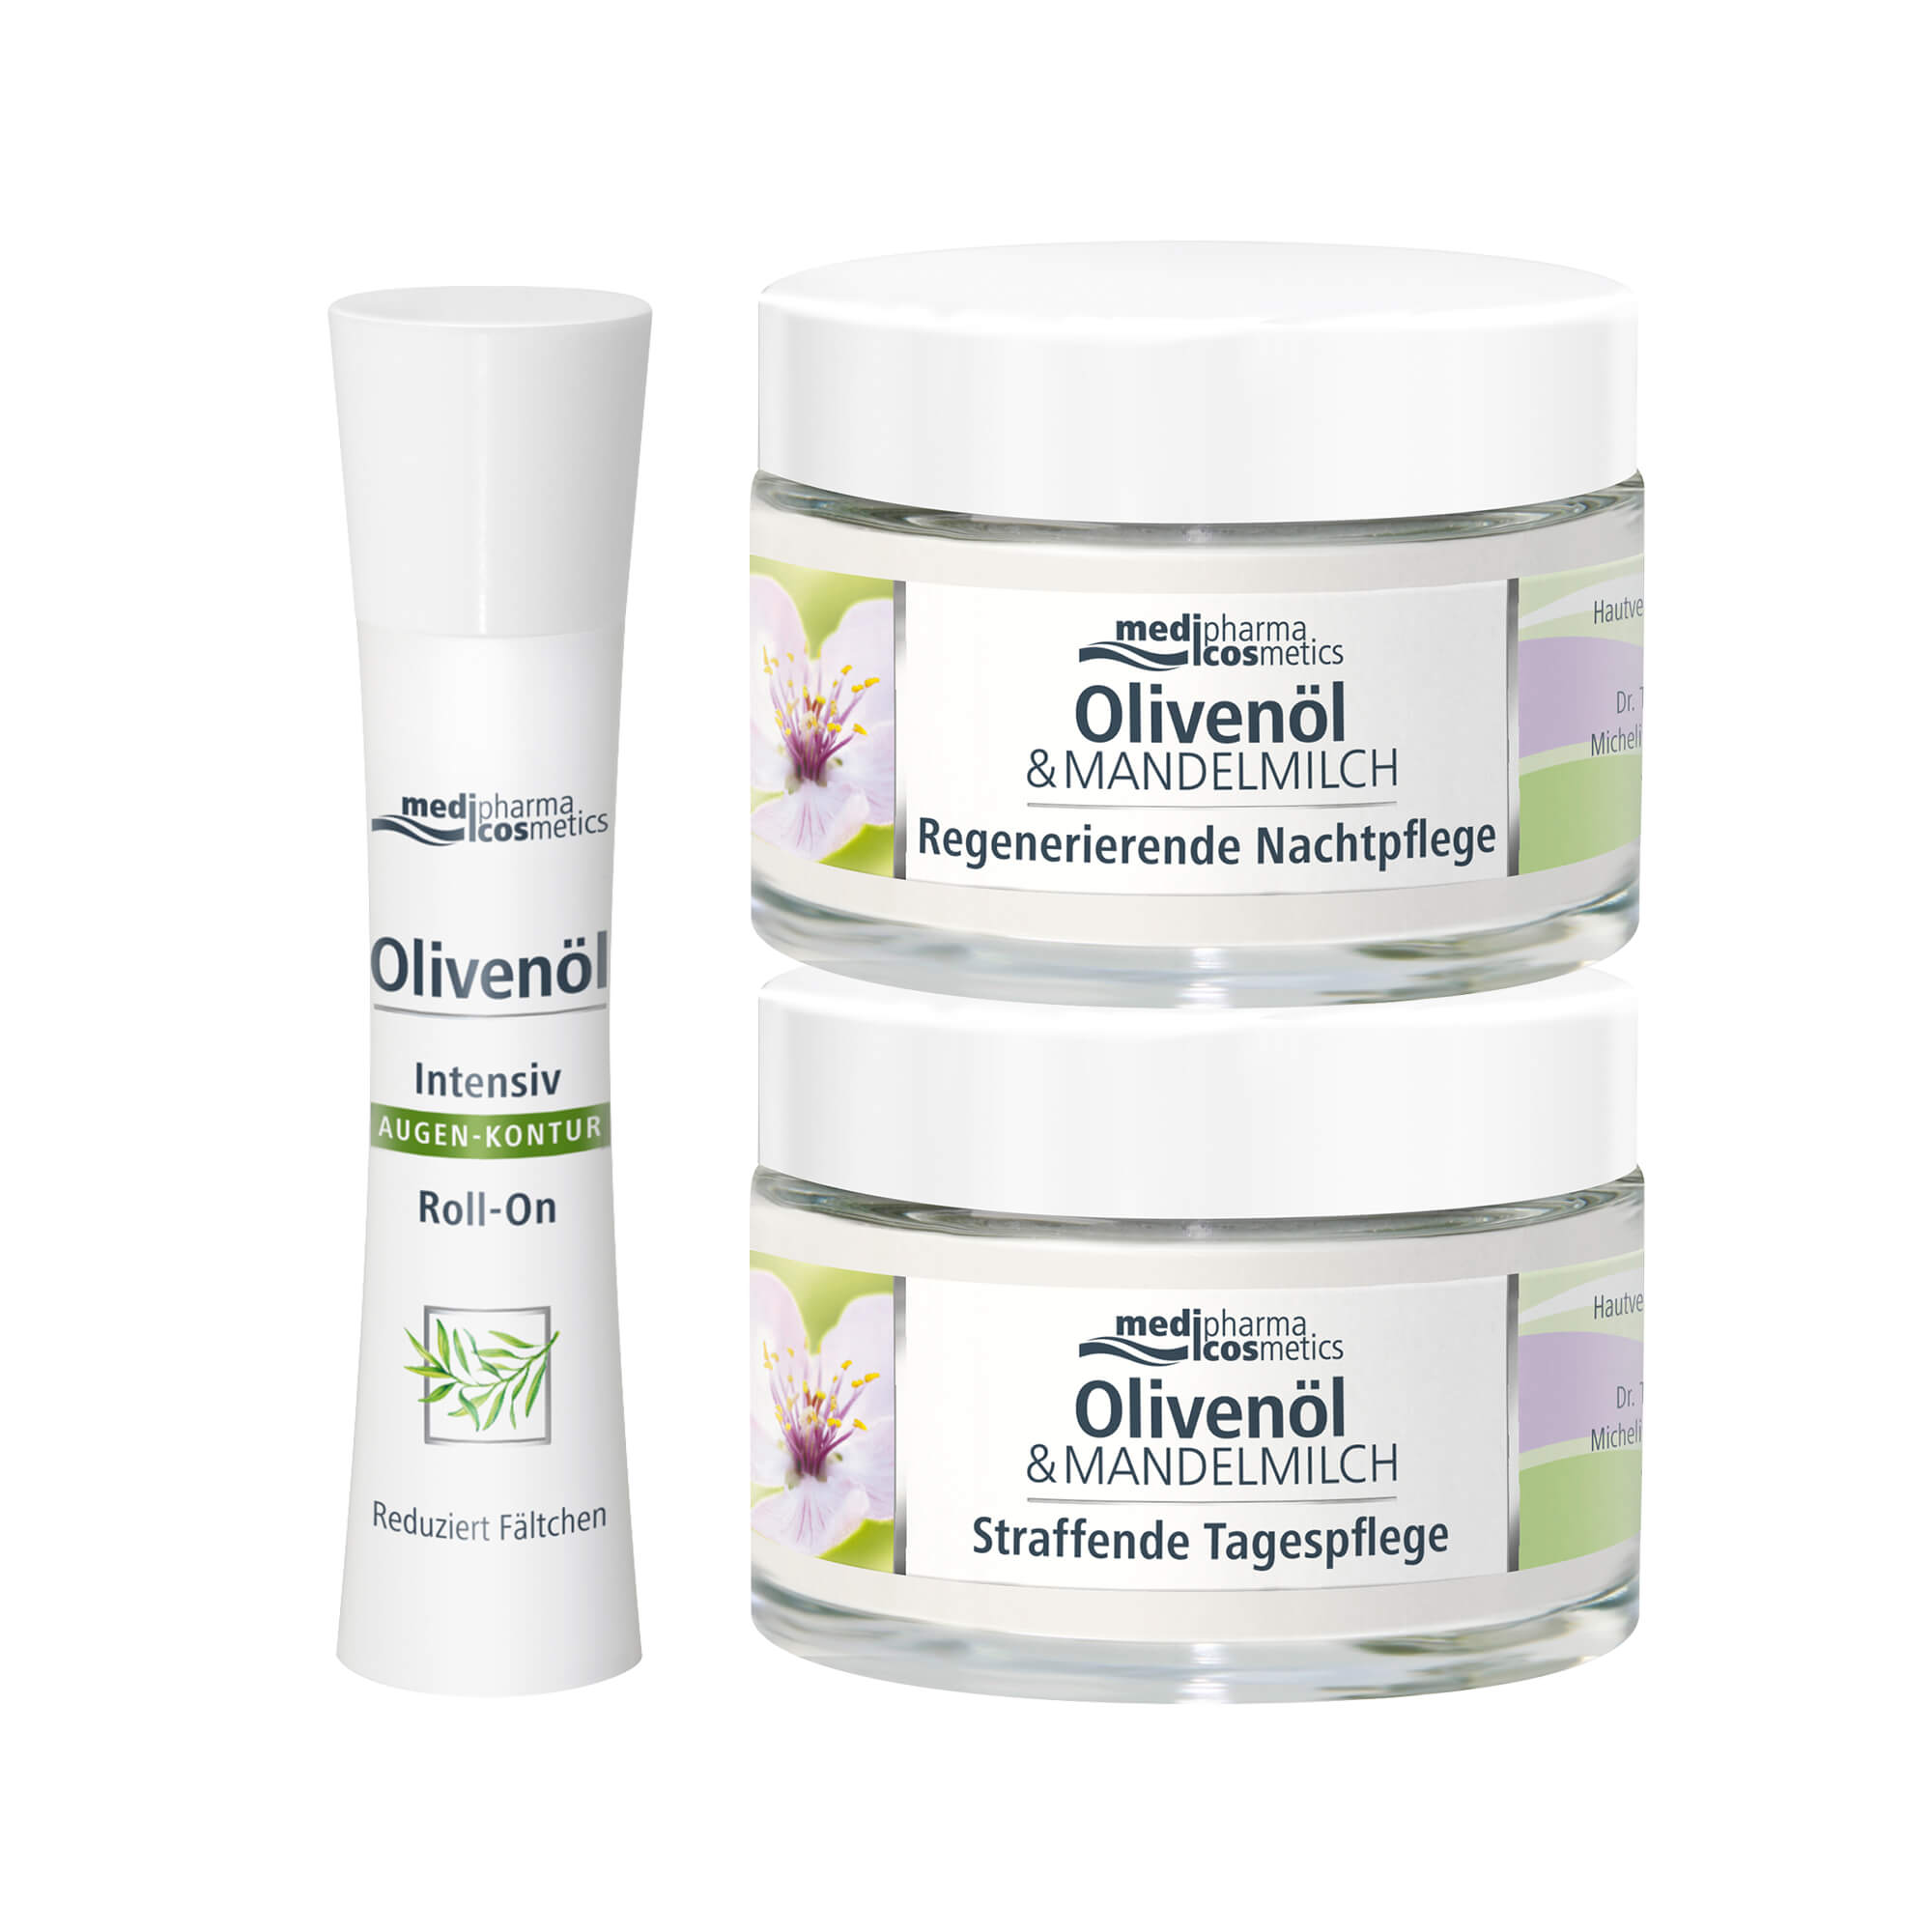 Das Olivenöl-Mandelmilch Spar-Set besteht aus 1 x straffende Tagespflege, 1 x regenerierende Nachtpflege und 1 x Intensiv Augen-Kontur Roll-On.